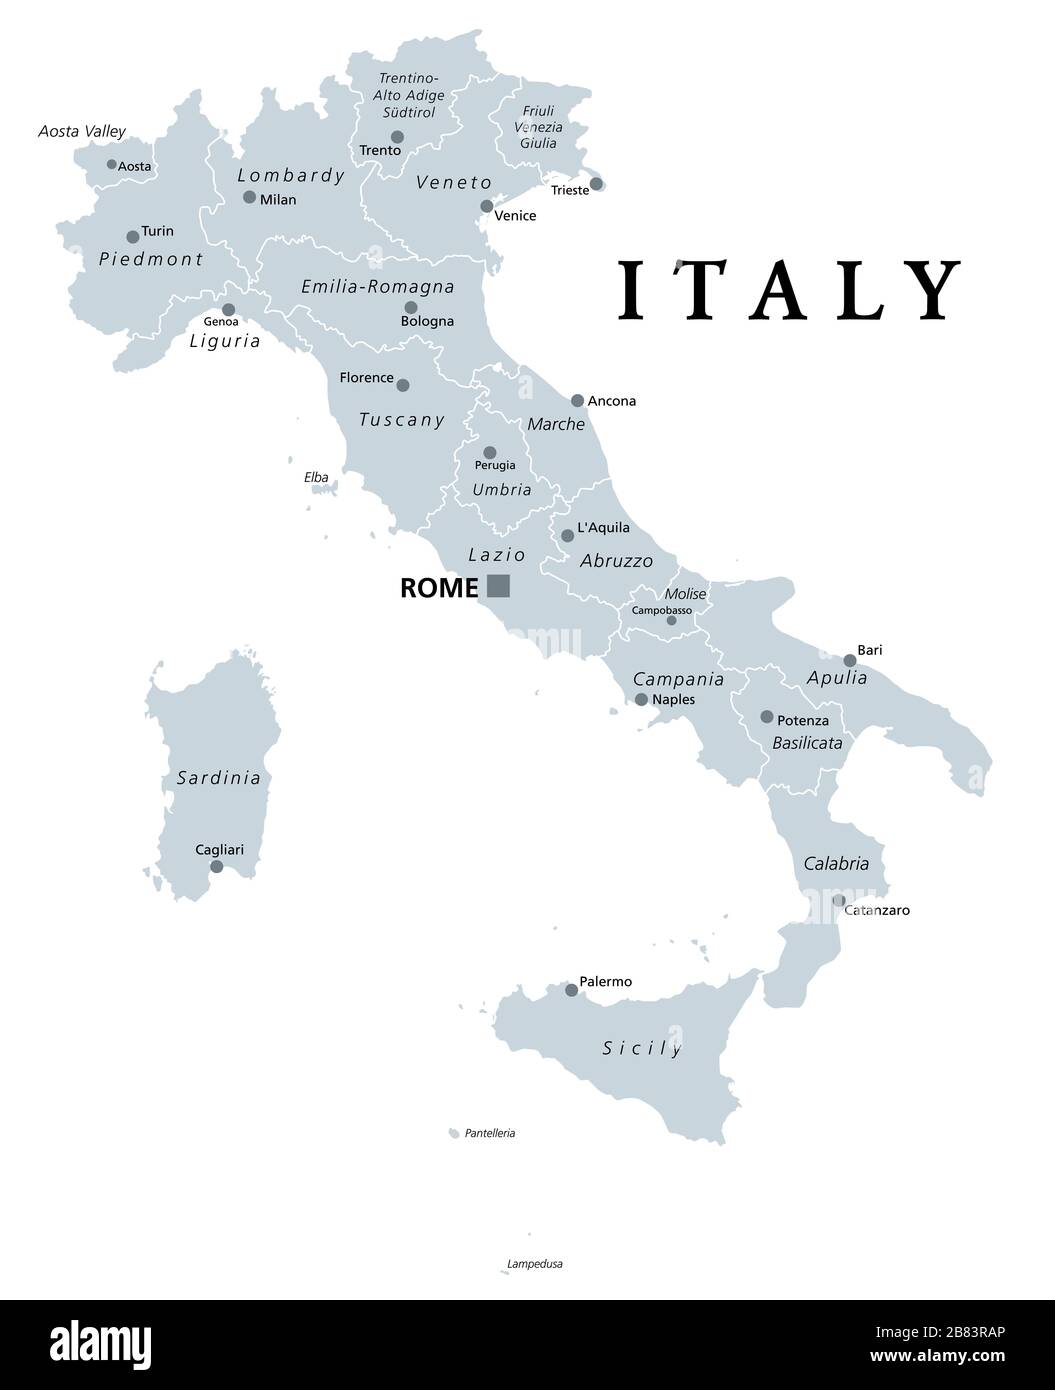 Italie, carte politique grise avec divisions administratives. République italienne avec la capitale Rome, 20 régions, leurs frontières et capitales. Étiquetage anglais. Banque D'Images